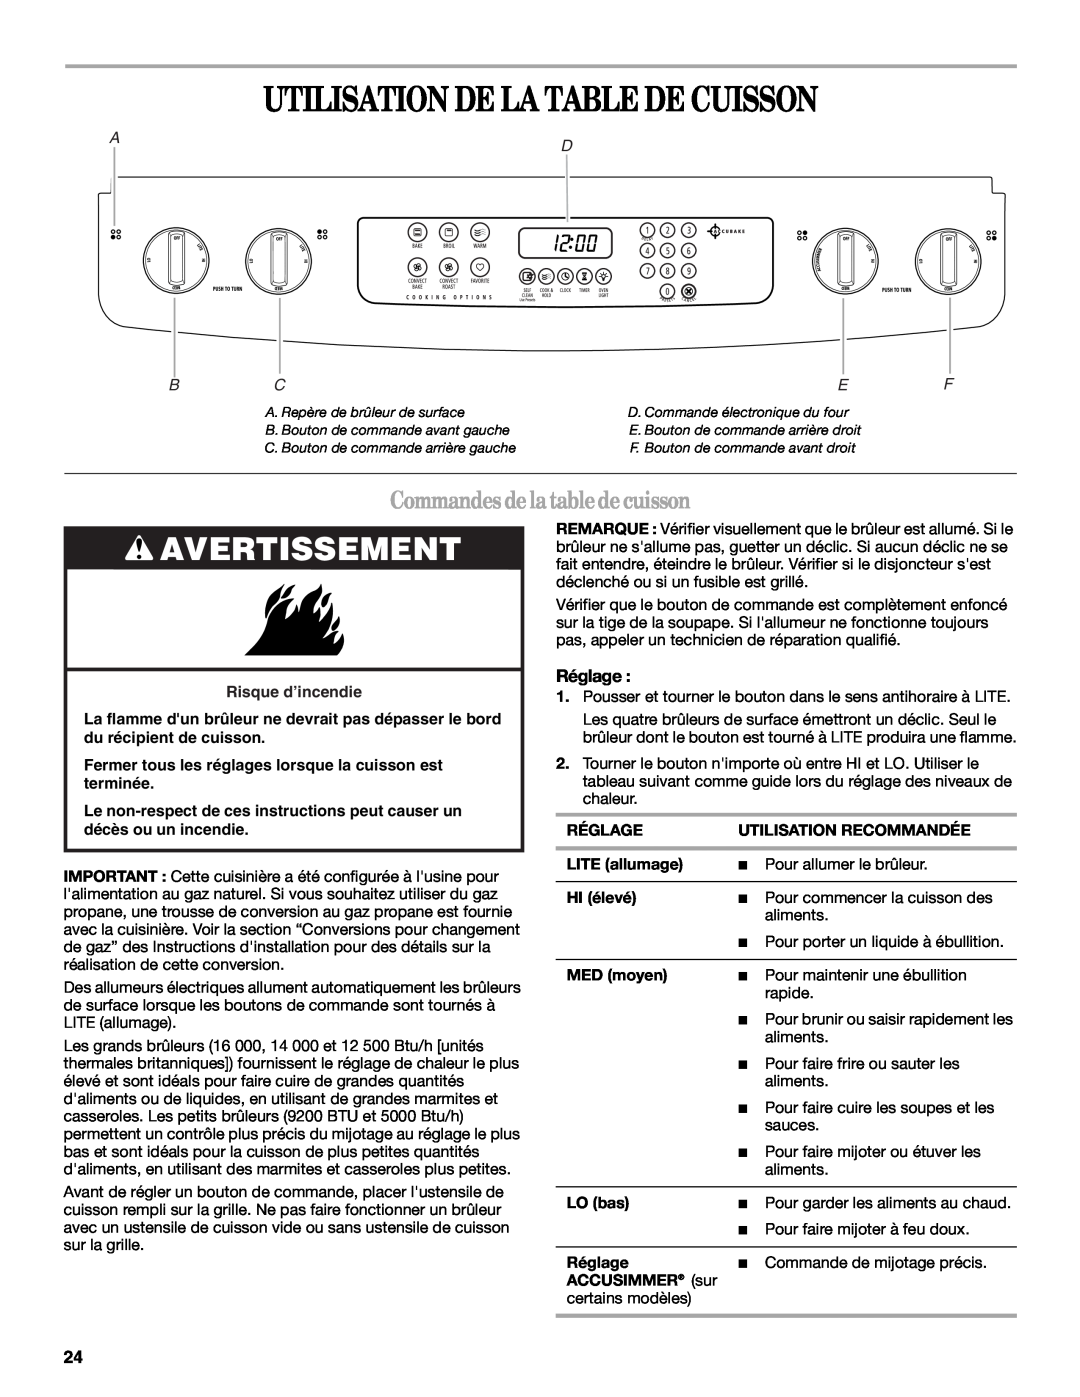 Whirlpool GW397LXU manual Utilisation De La Table De Cuisson, Commandesdelatabledecuisson, Avertissement, Réglage, Ad Bcef 